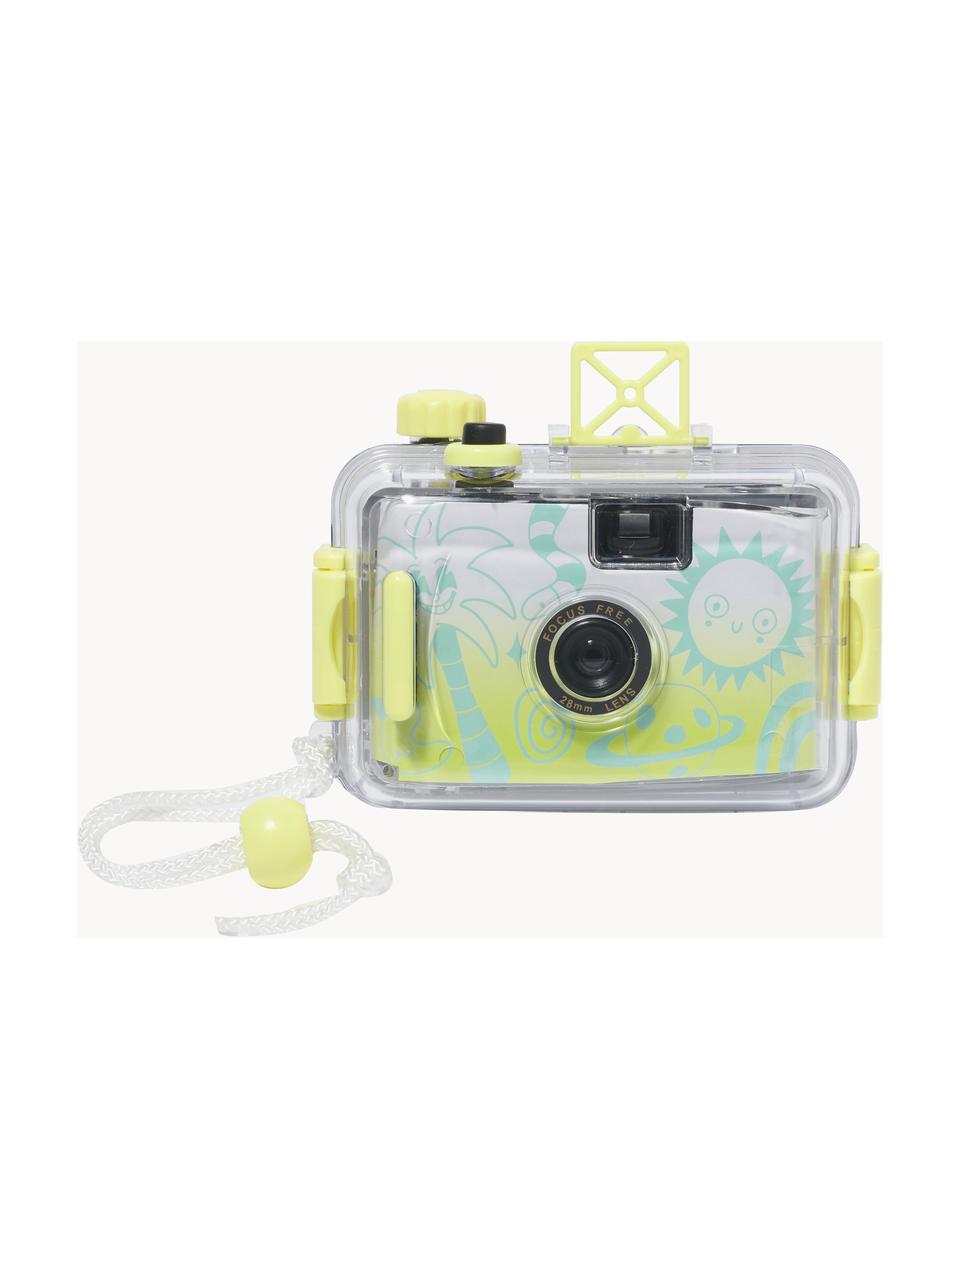 Podvodní fotoaparát s vodotěsným pouzdrem Sea Kids, ABS umělá hmota, Tlumeně bílá, tyrkysová zelená, světle žlutá, Š 15 cm, V 11 cm